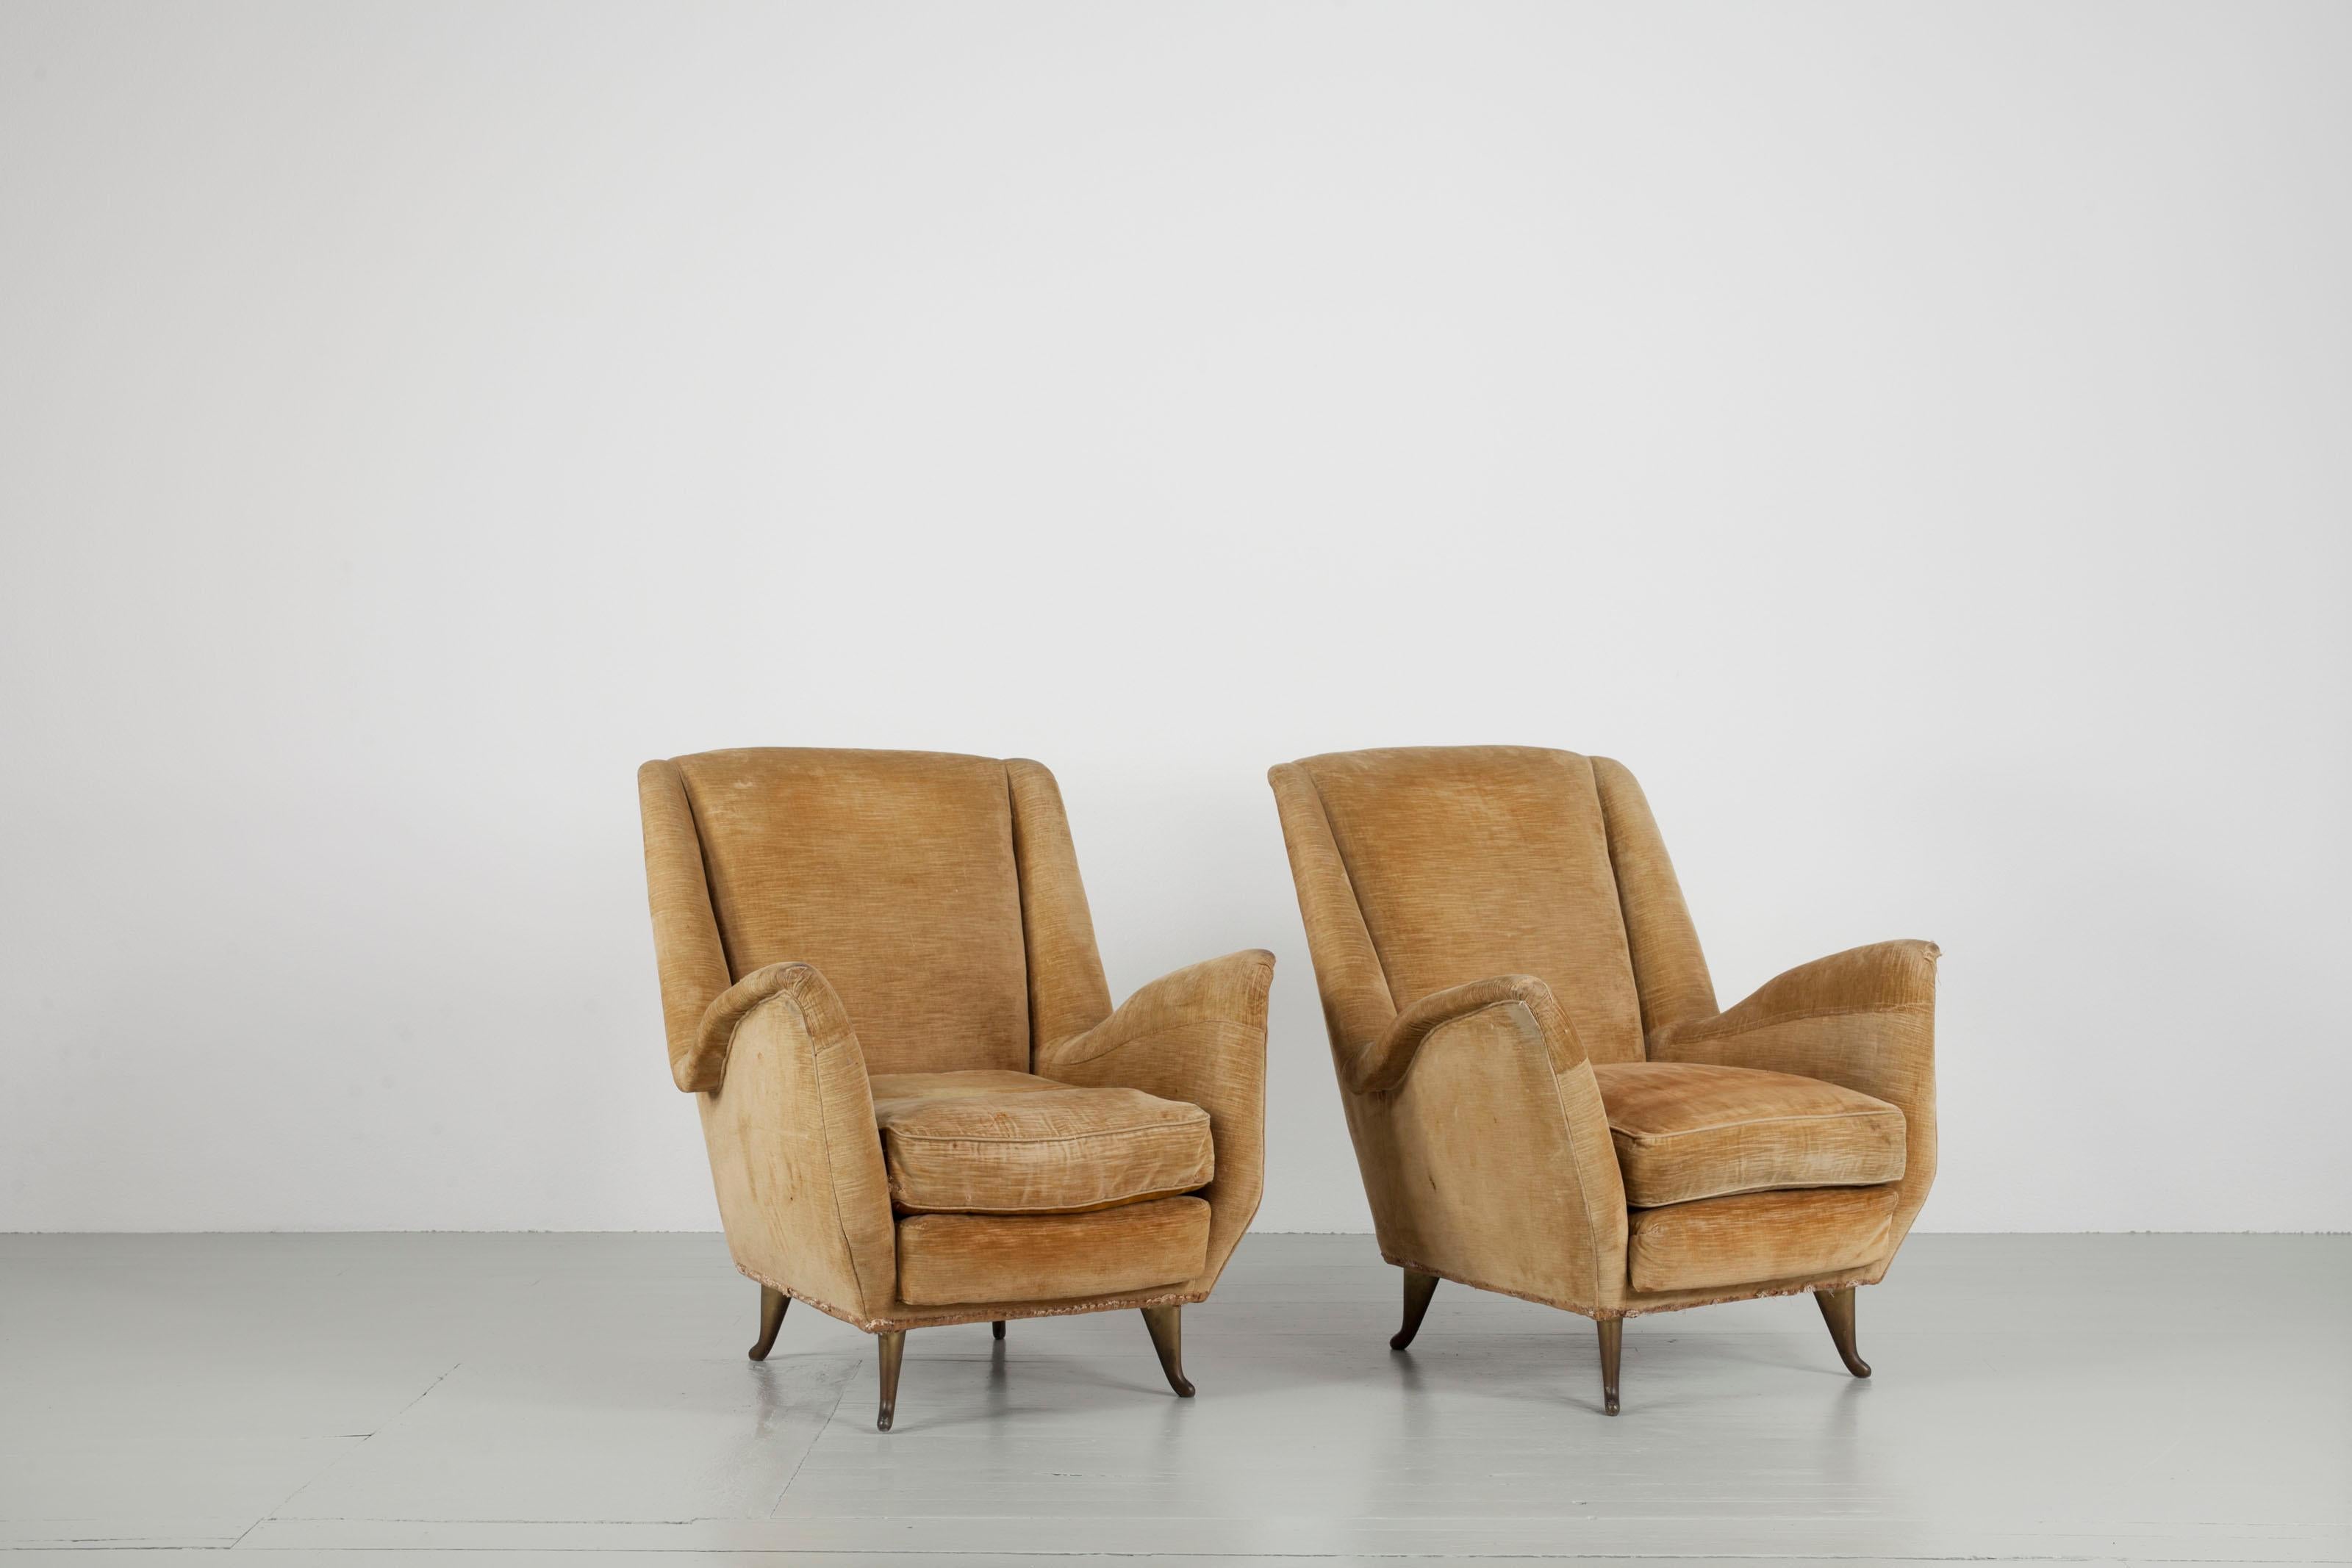 Satz von zwei cremefarbenen Ohrensesseln, Design und Hersteller I. S. A. Bergamo, Italien, 1950er Jahre. Die Stühle sind mit außergewöhnlichen, zierlichen Füßen ausgestattet. Die Stühle müssen neu gepolstert werden.

Für detailliertere Bilder können